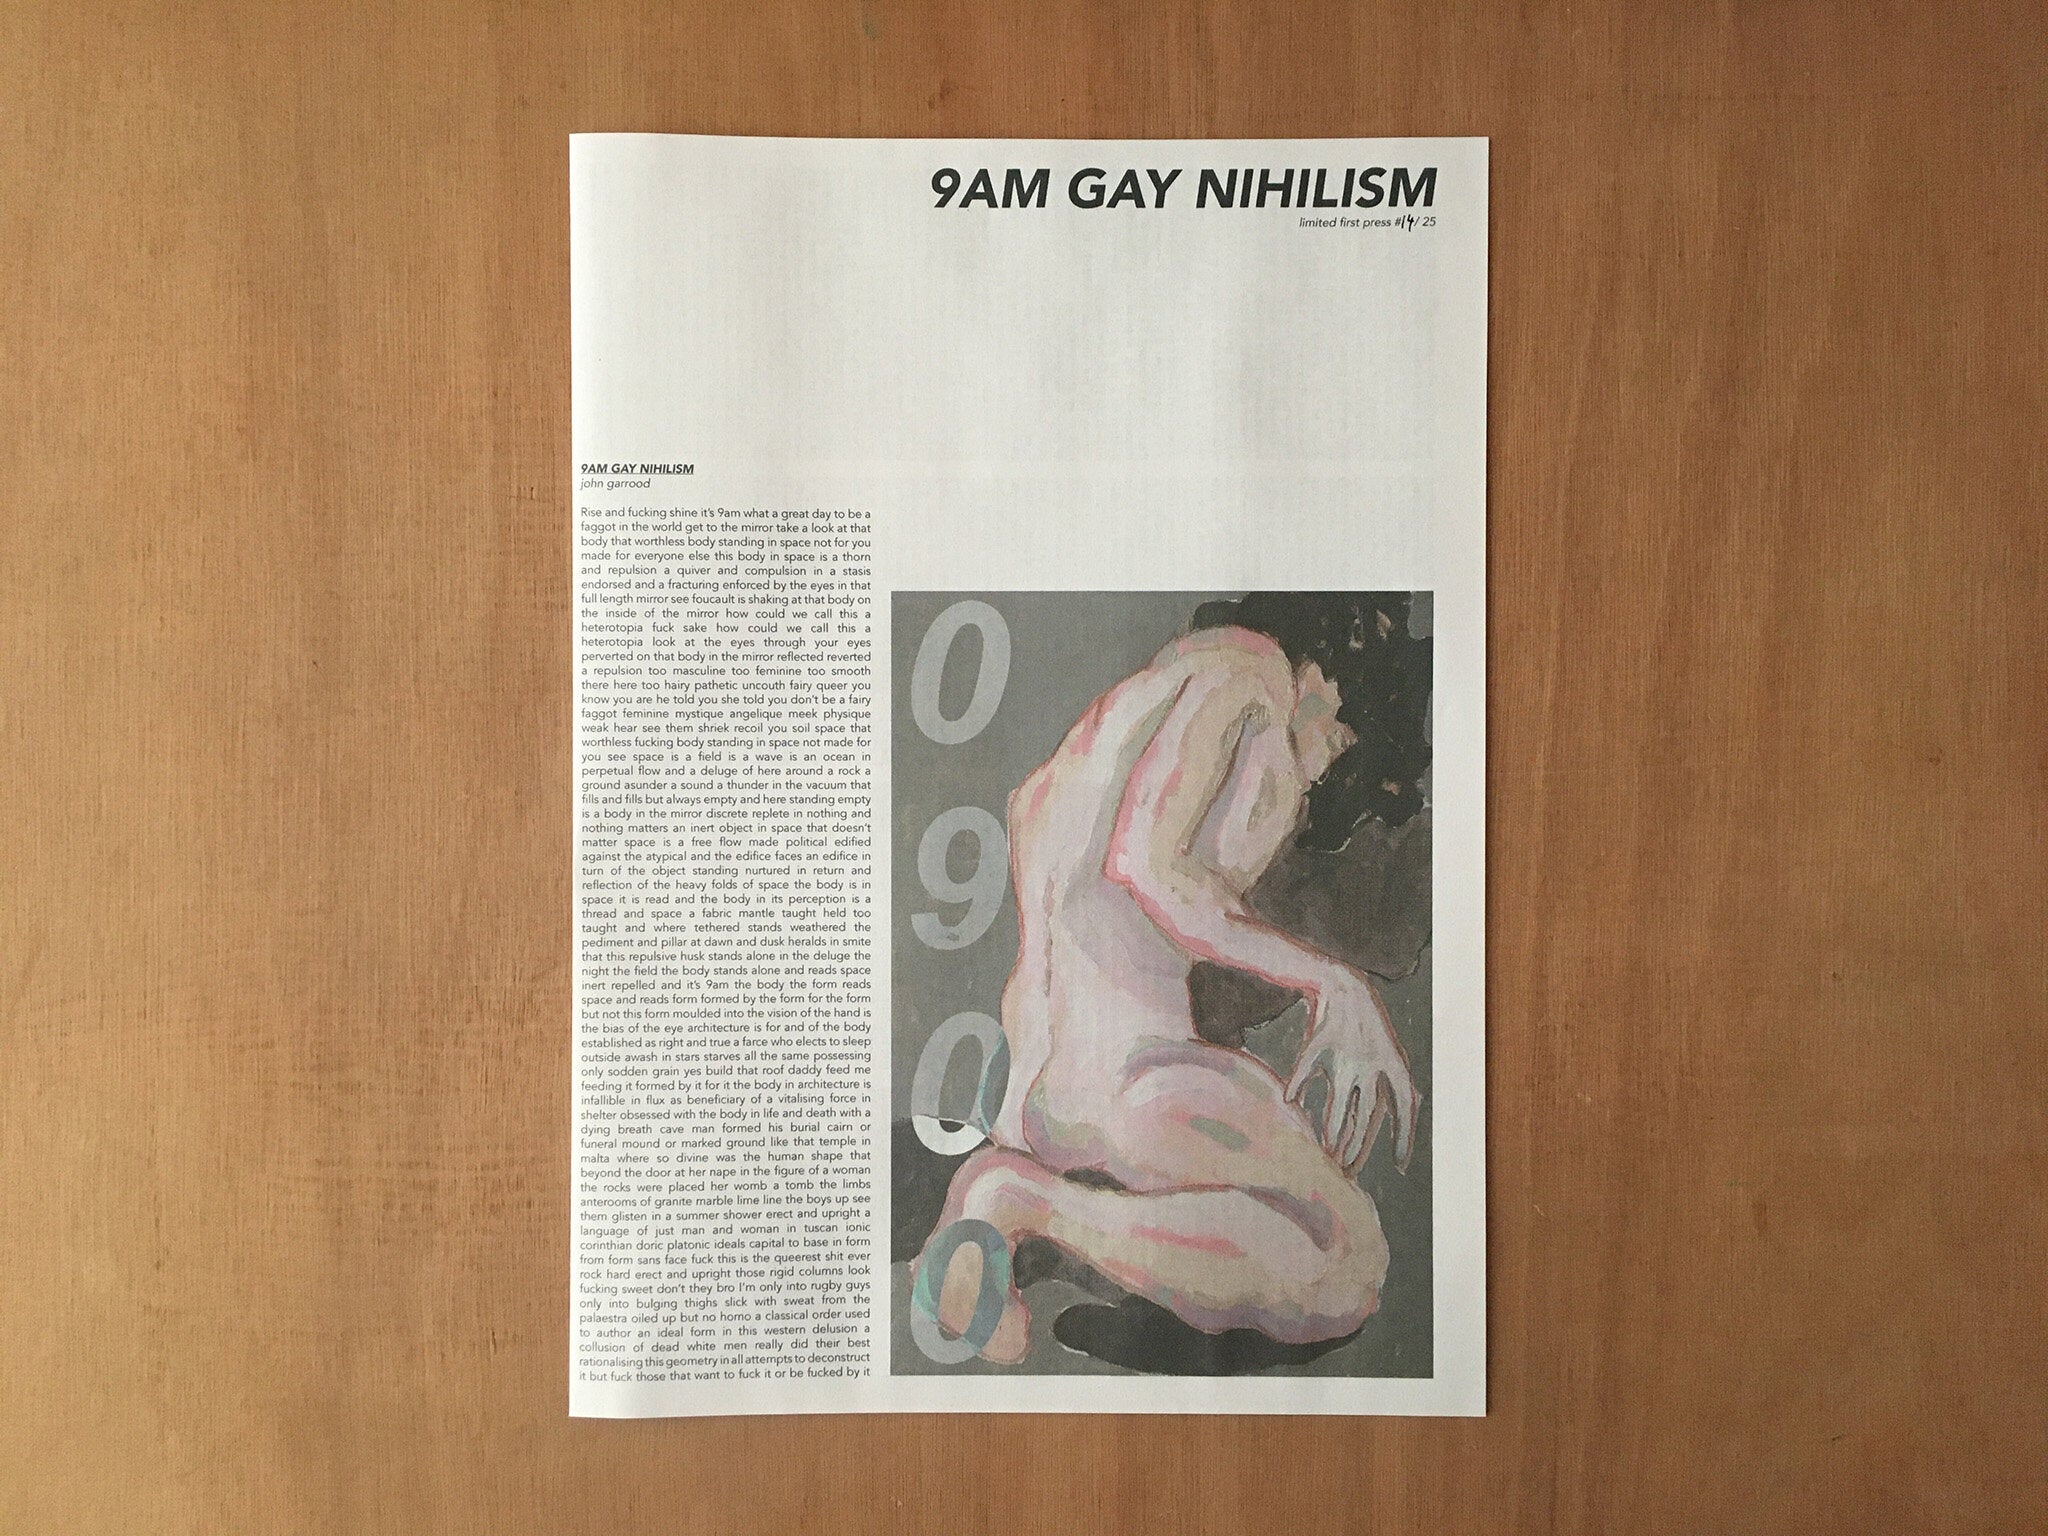 9AM GAY NIHILISM by John Garrood